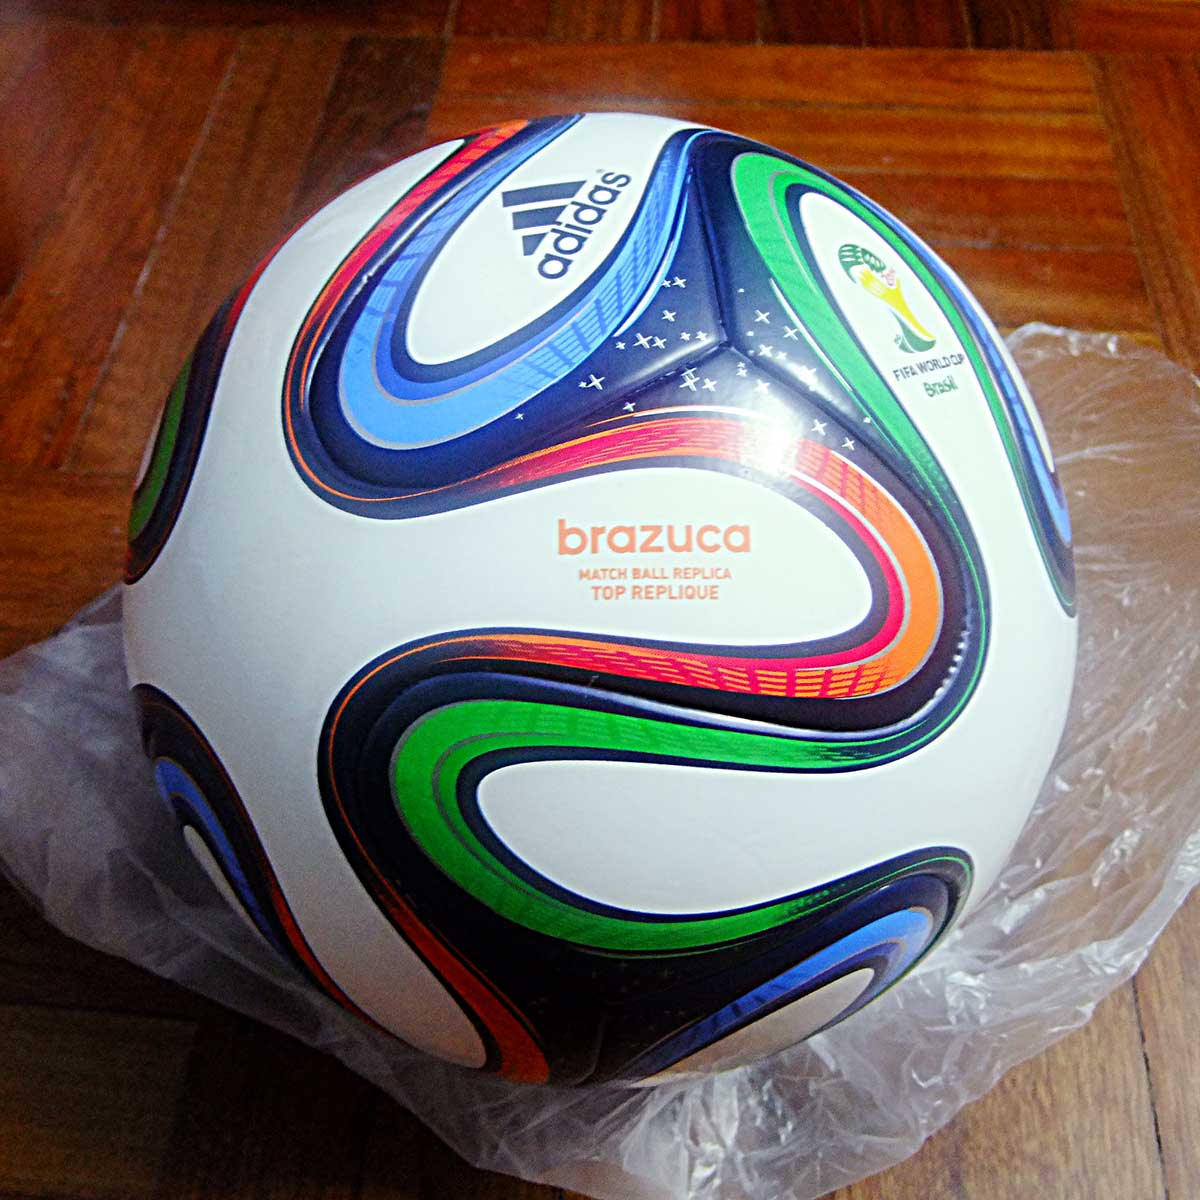 Купить Футбольный мяч ЧМ-2014 Адидас бразука топ реплика мяча термически скрепленный пакет СФ Adidas g73622 Brazuca Top Replica Ball в интернет-магазине с Таобао (Taobao) из Китая, низкие цены